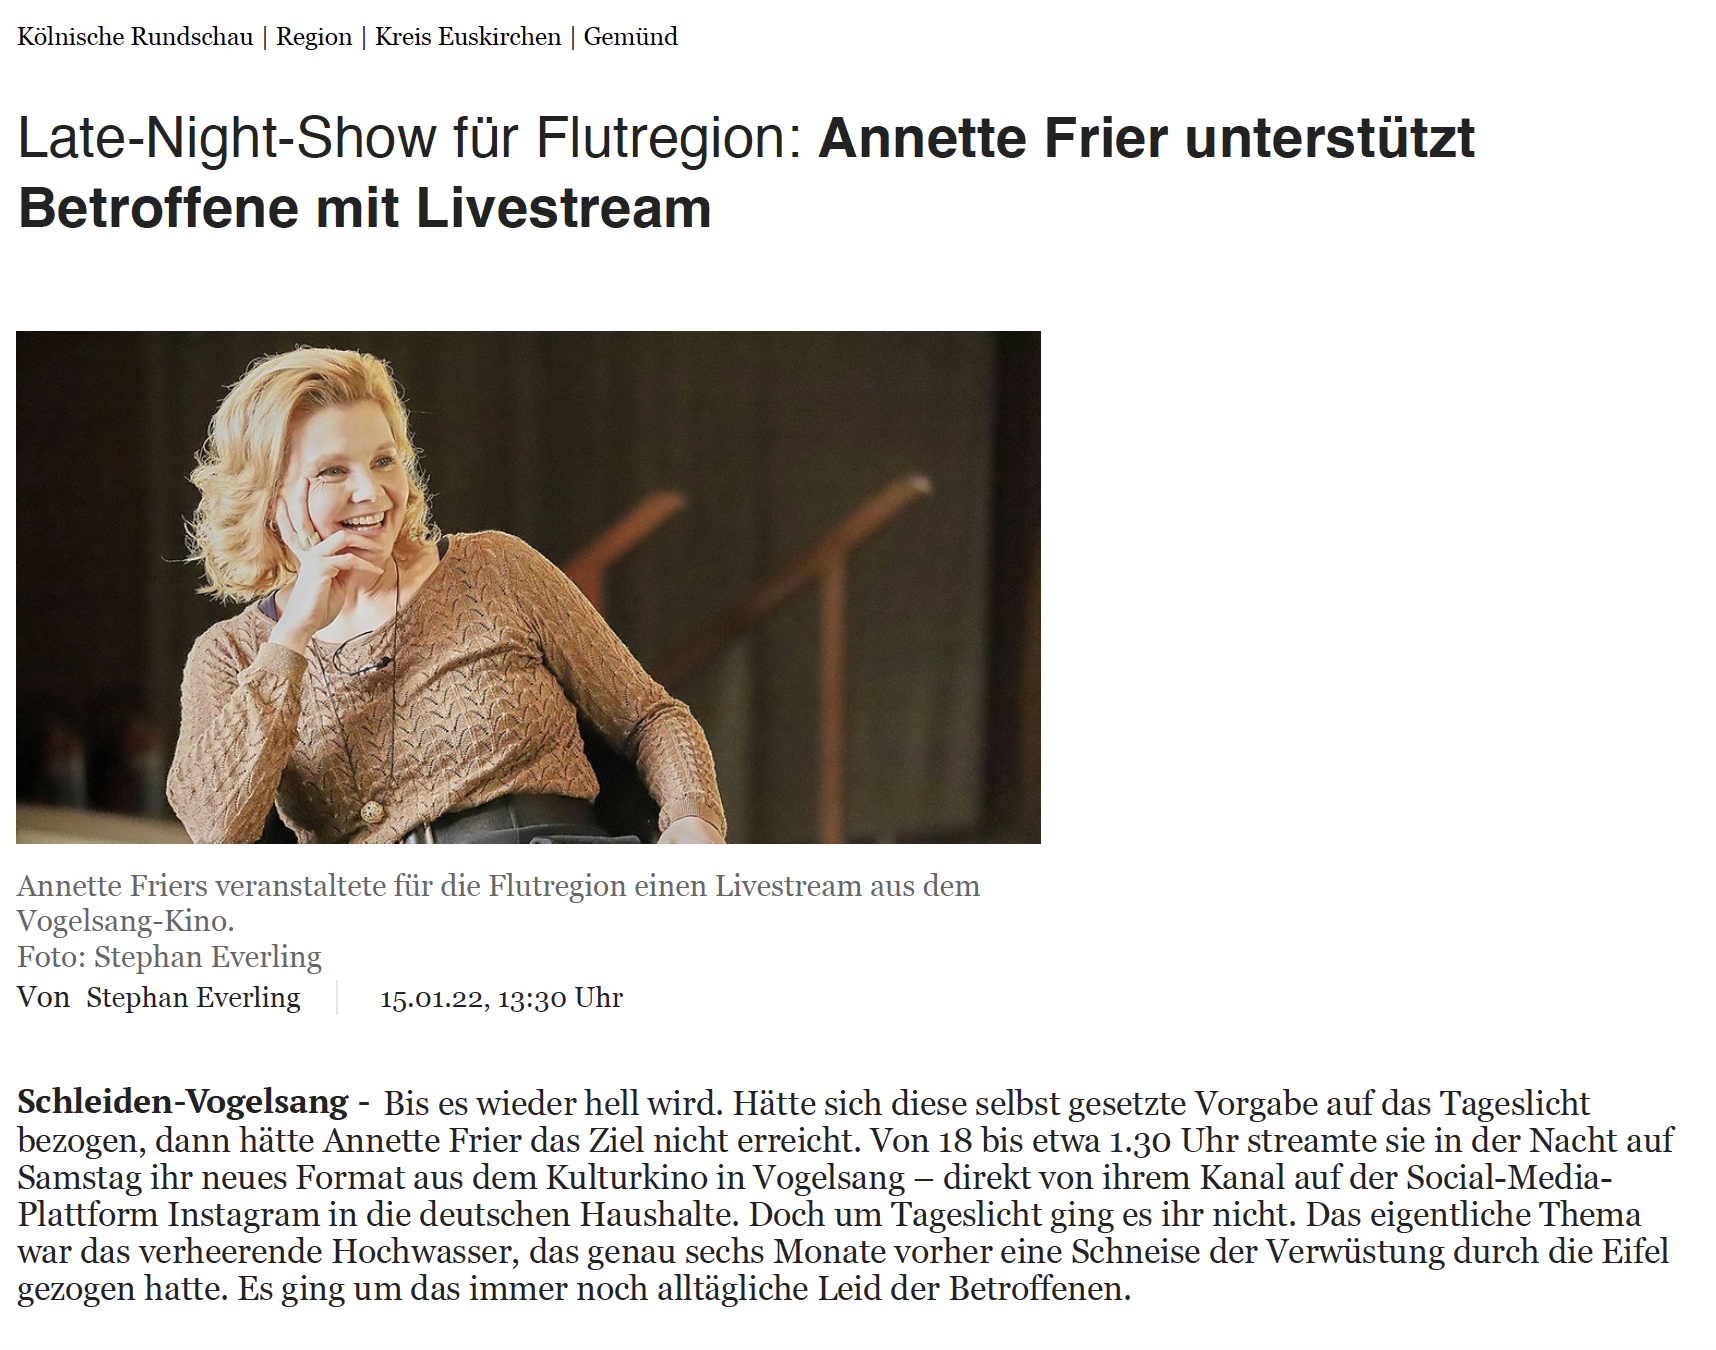 Annette Frier Insta Live